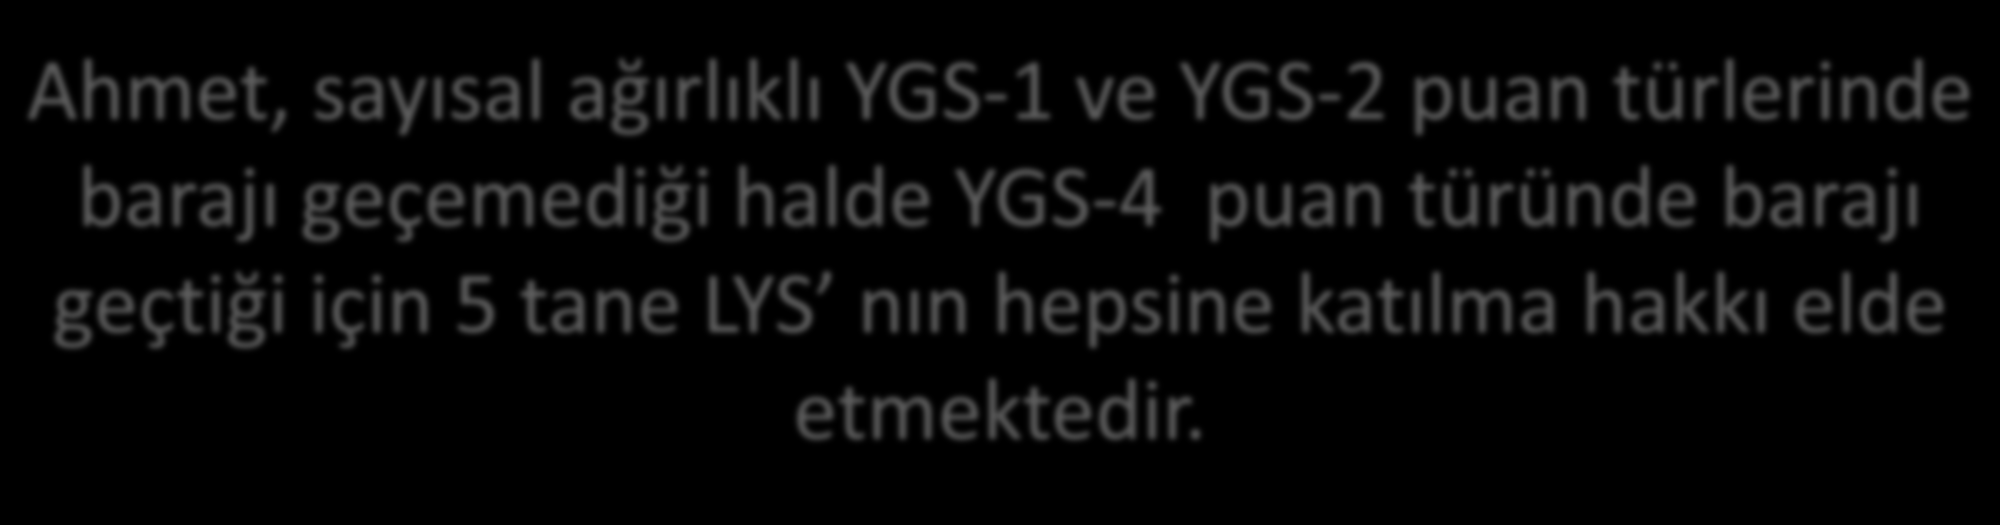 YGS den 180 ve üzerinde alamayan adayların LYS lere başvuru hakkı yok.